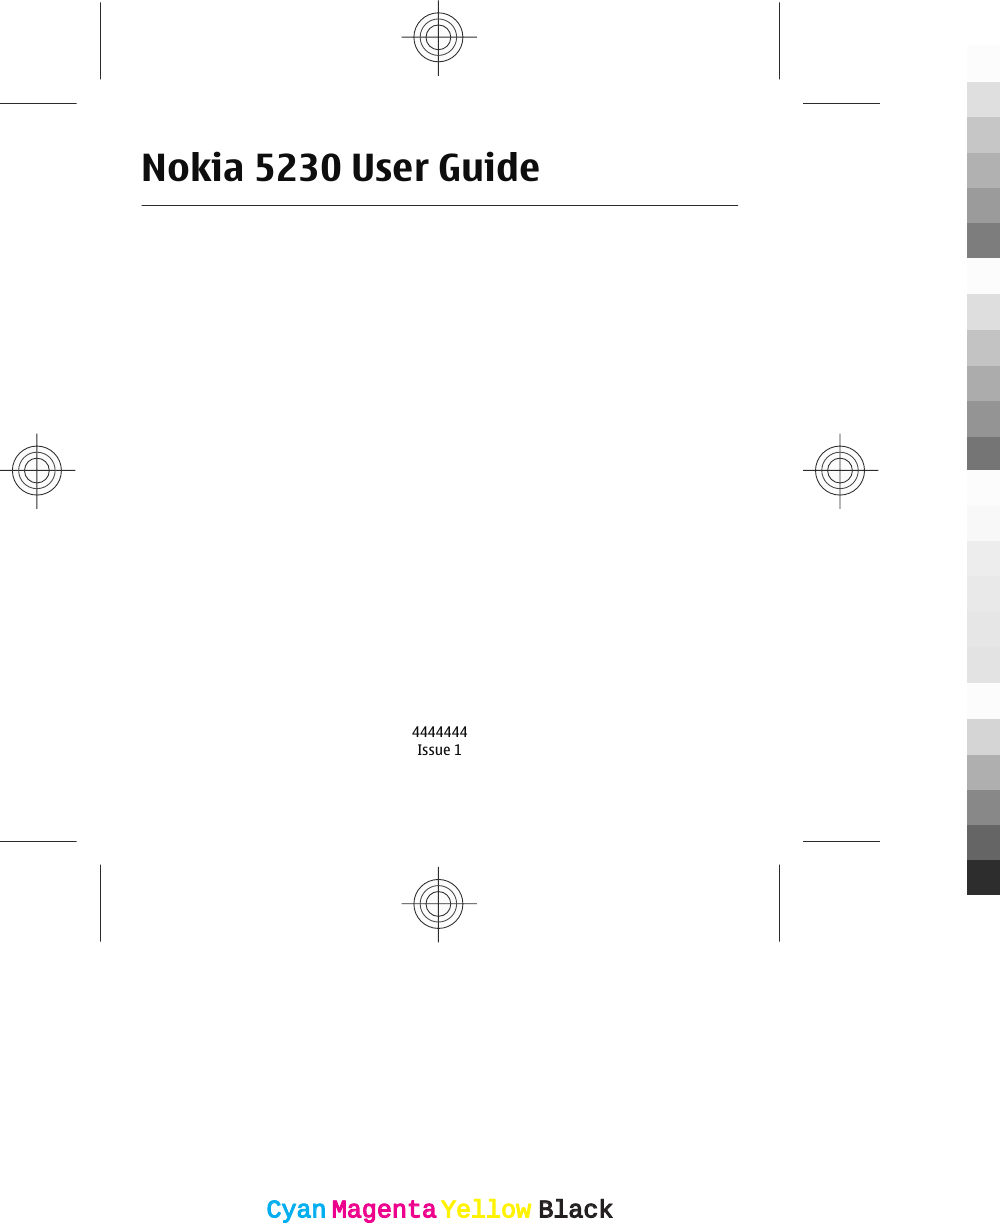 Nokia 5230 User Guide4444444Issue 1CyanCyanMagentaMagentaYellowYellowBlackBlack